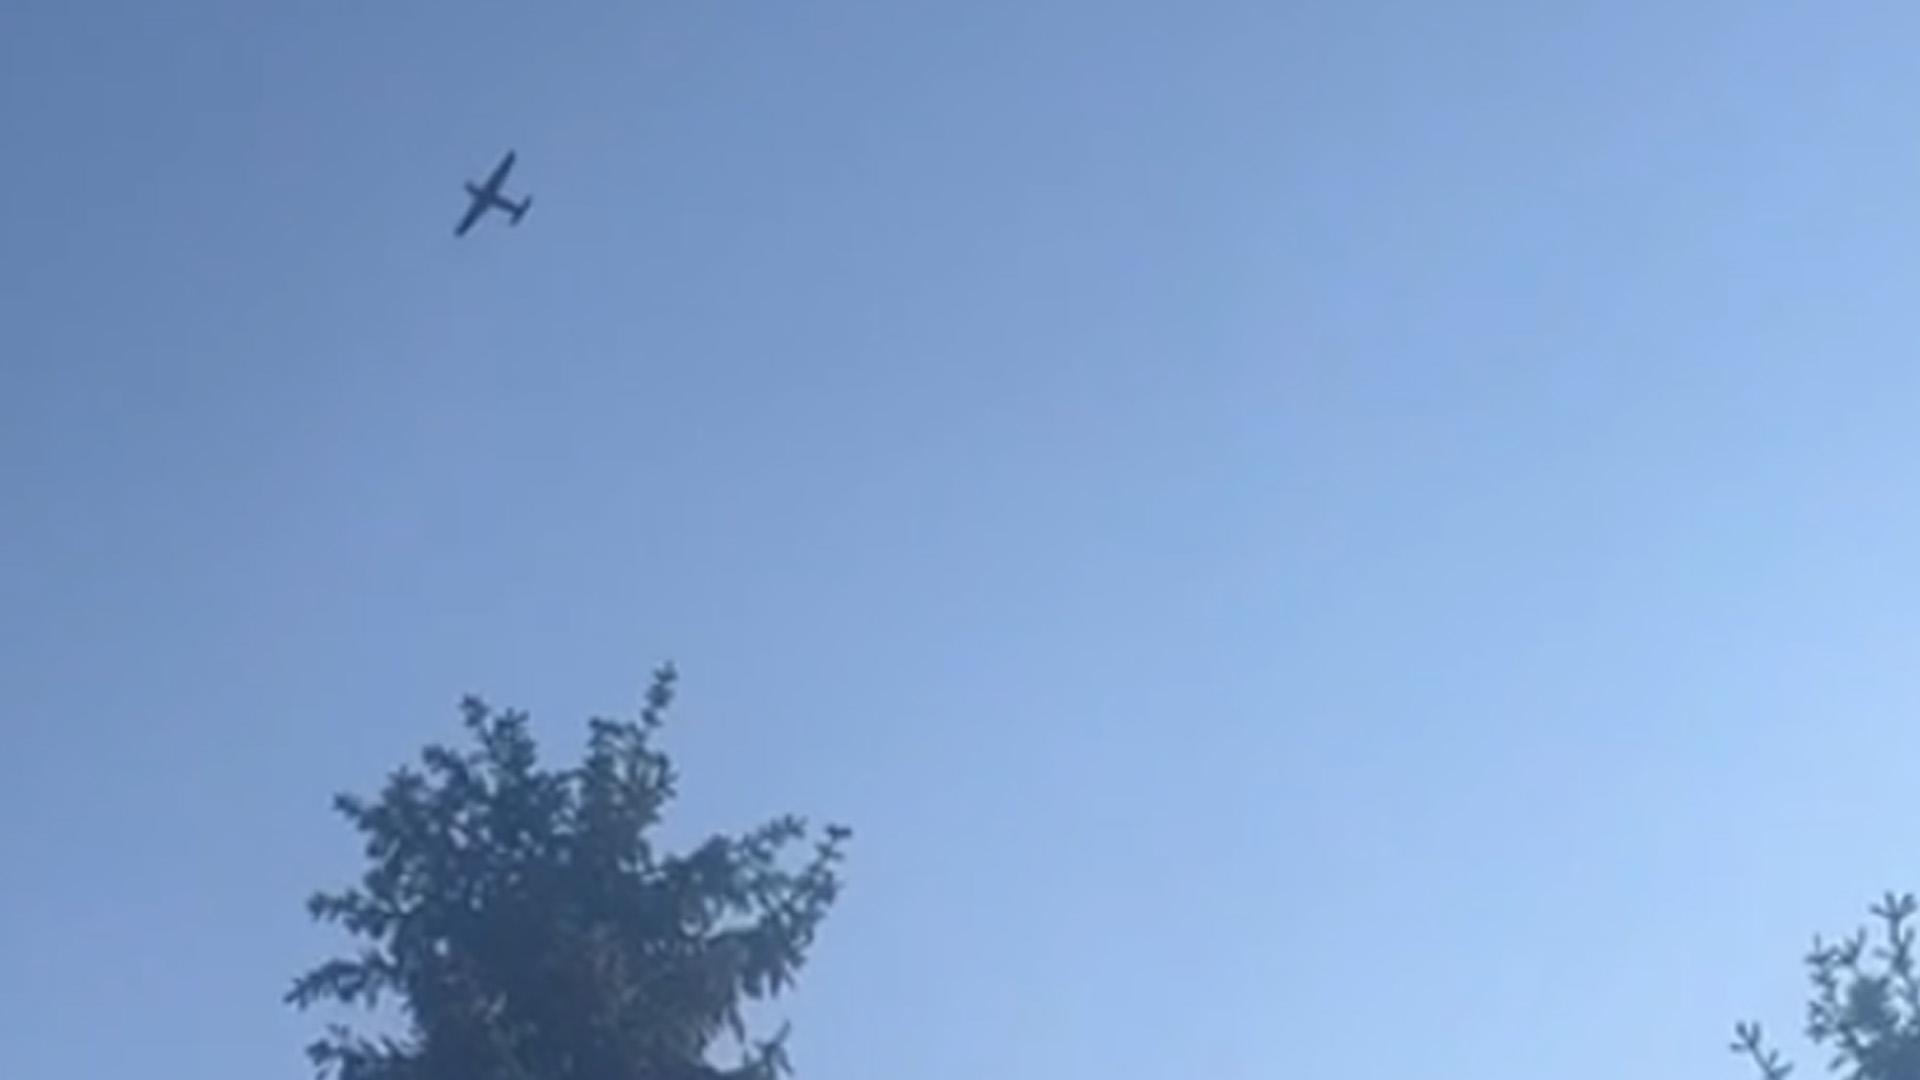 Момент пролета беспилотника, атаковавшего Москву. Видео